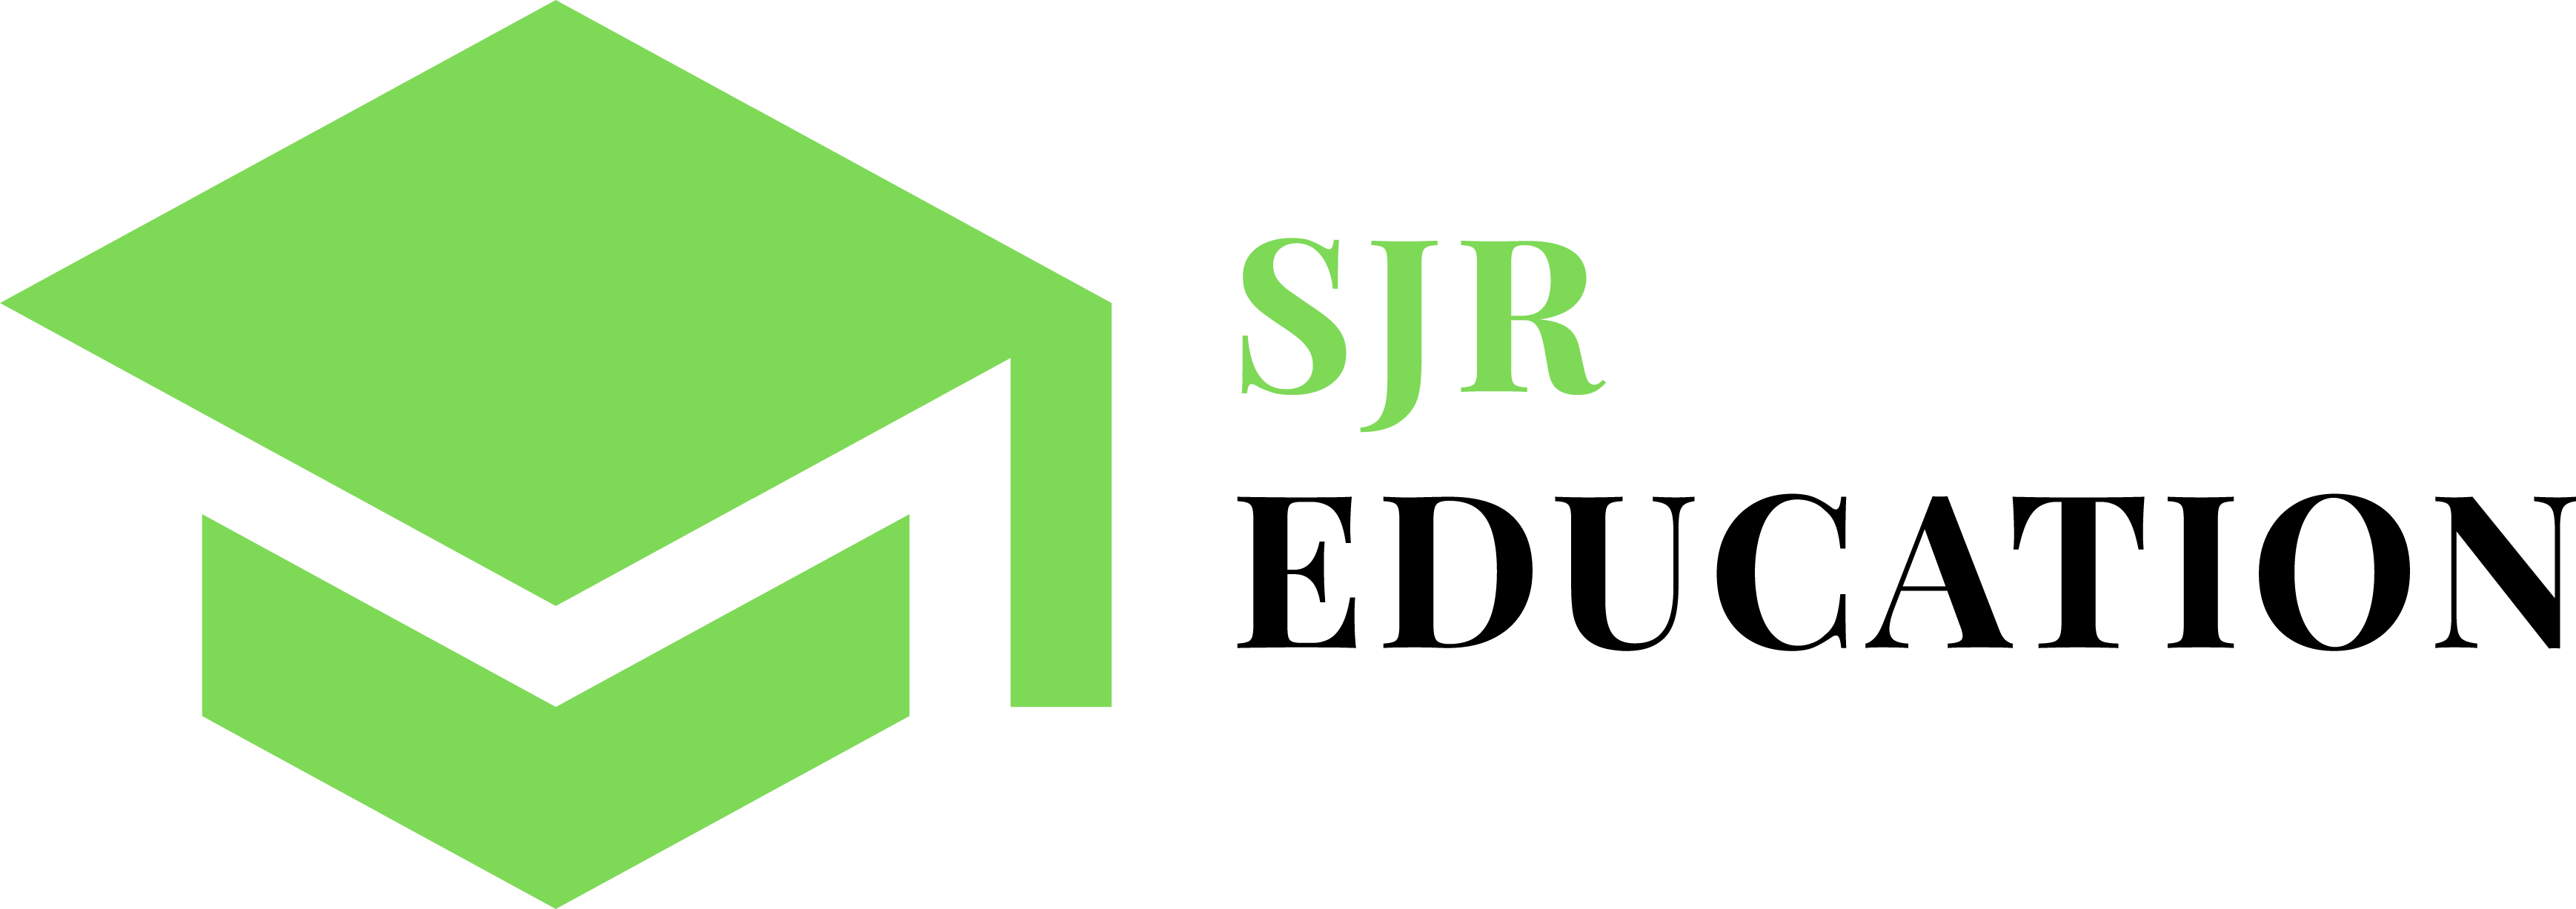 Logo of SJR Education for the mobile version of the site. SJR Education: Online Tutoring Provider